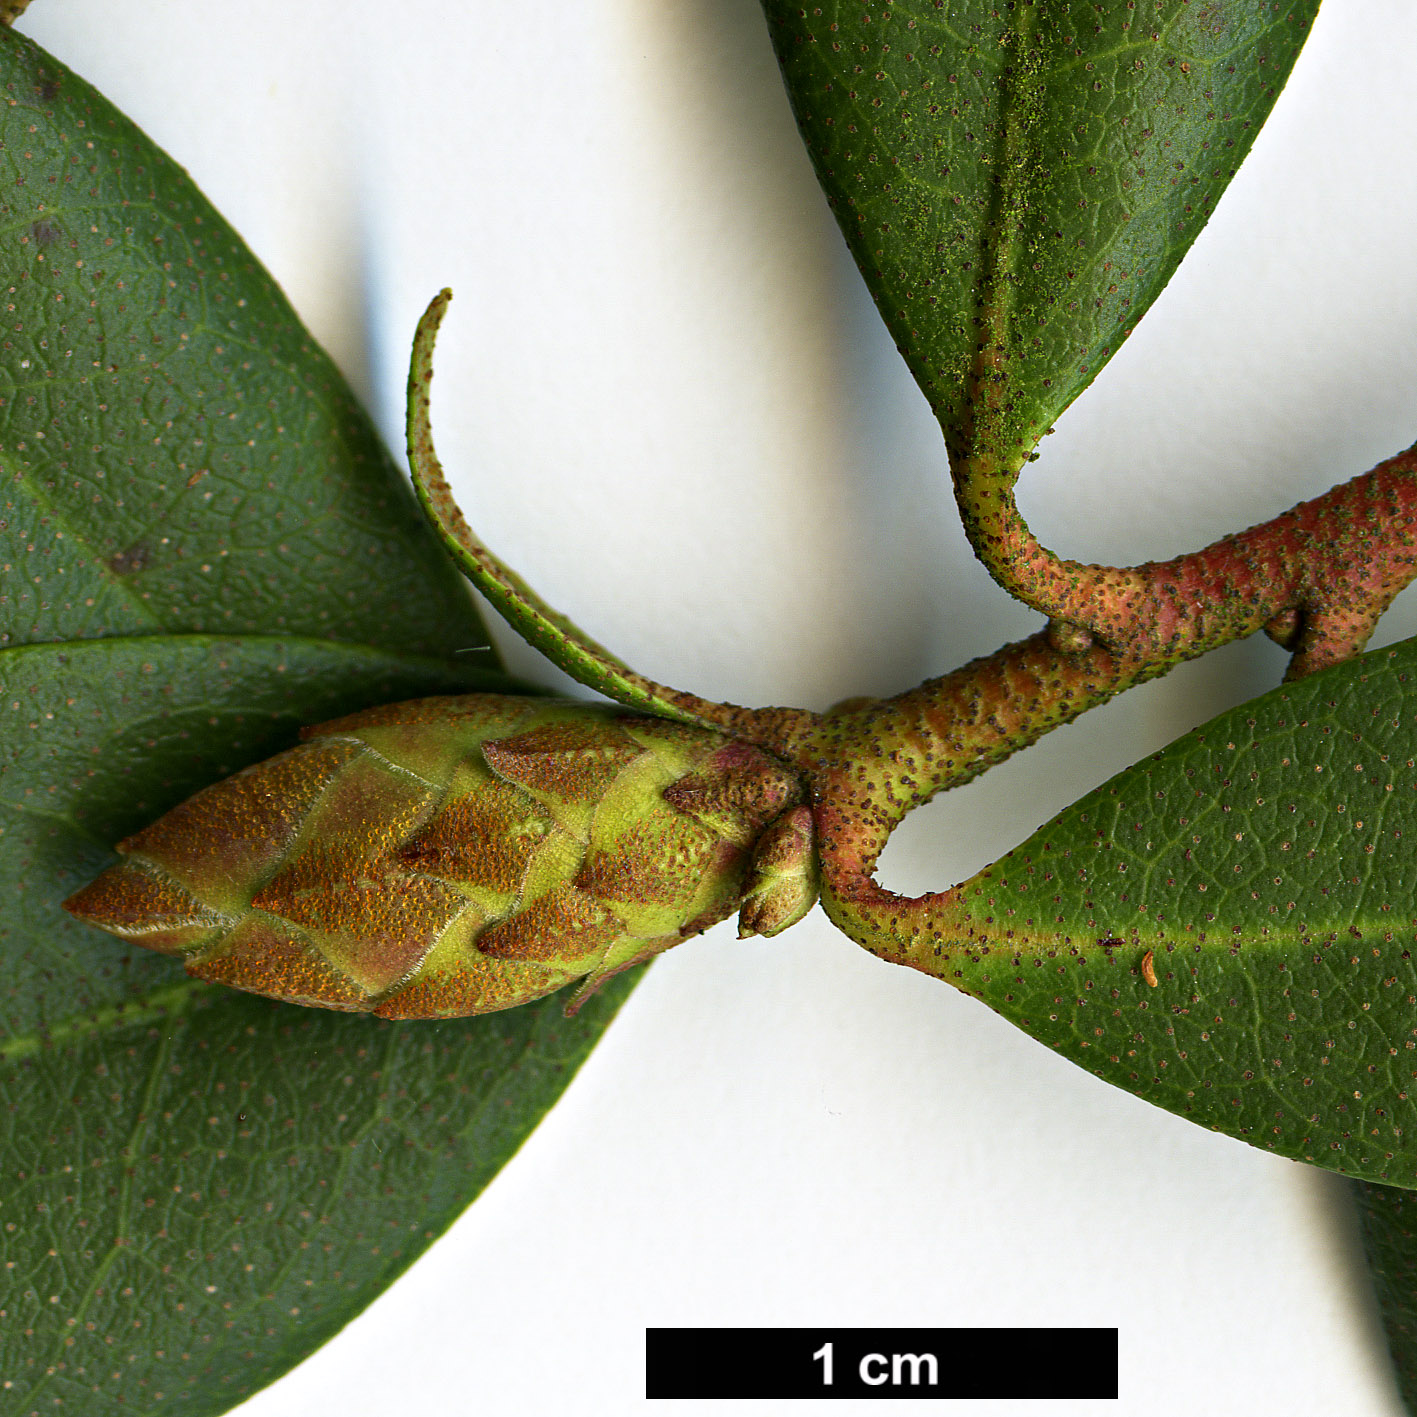 High resolution image: Family: Ericaceae - Genus: Rhododendron - Taxon: minus - SpeciesSub: var. chapmanii